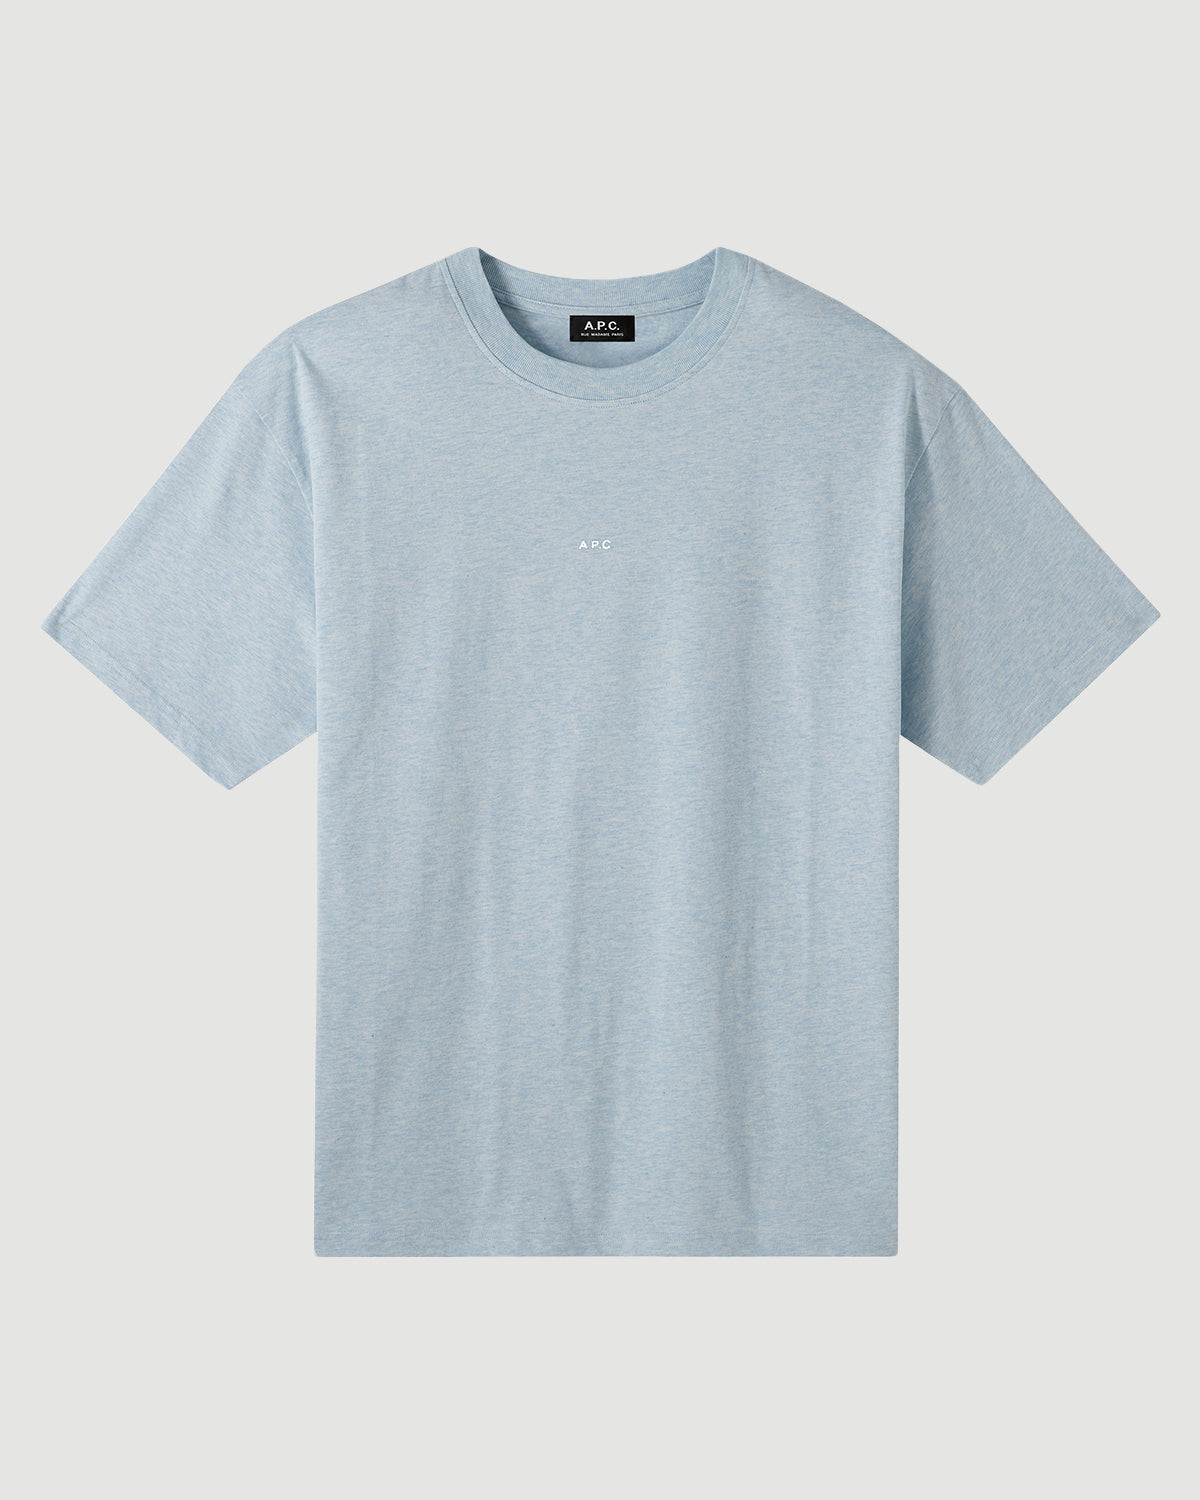 A.P.C. T-Shirt Kyle Color Bleu Ciel Chine T-shirt S/S Men